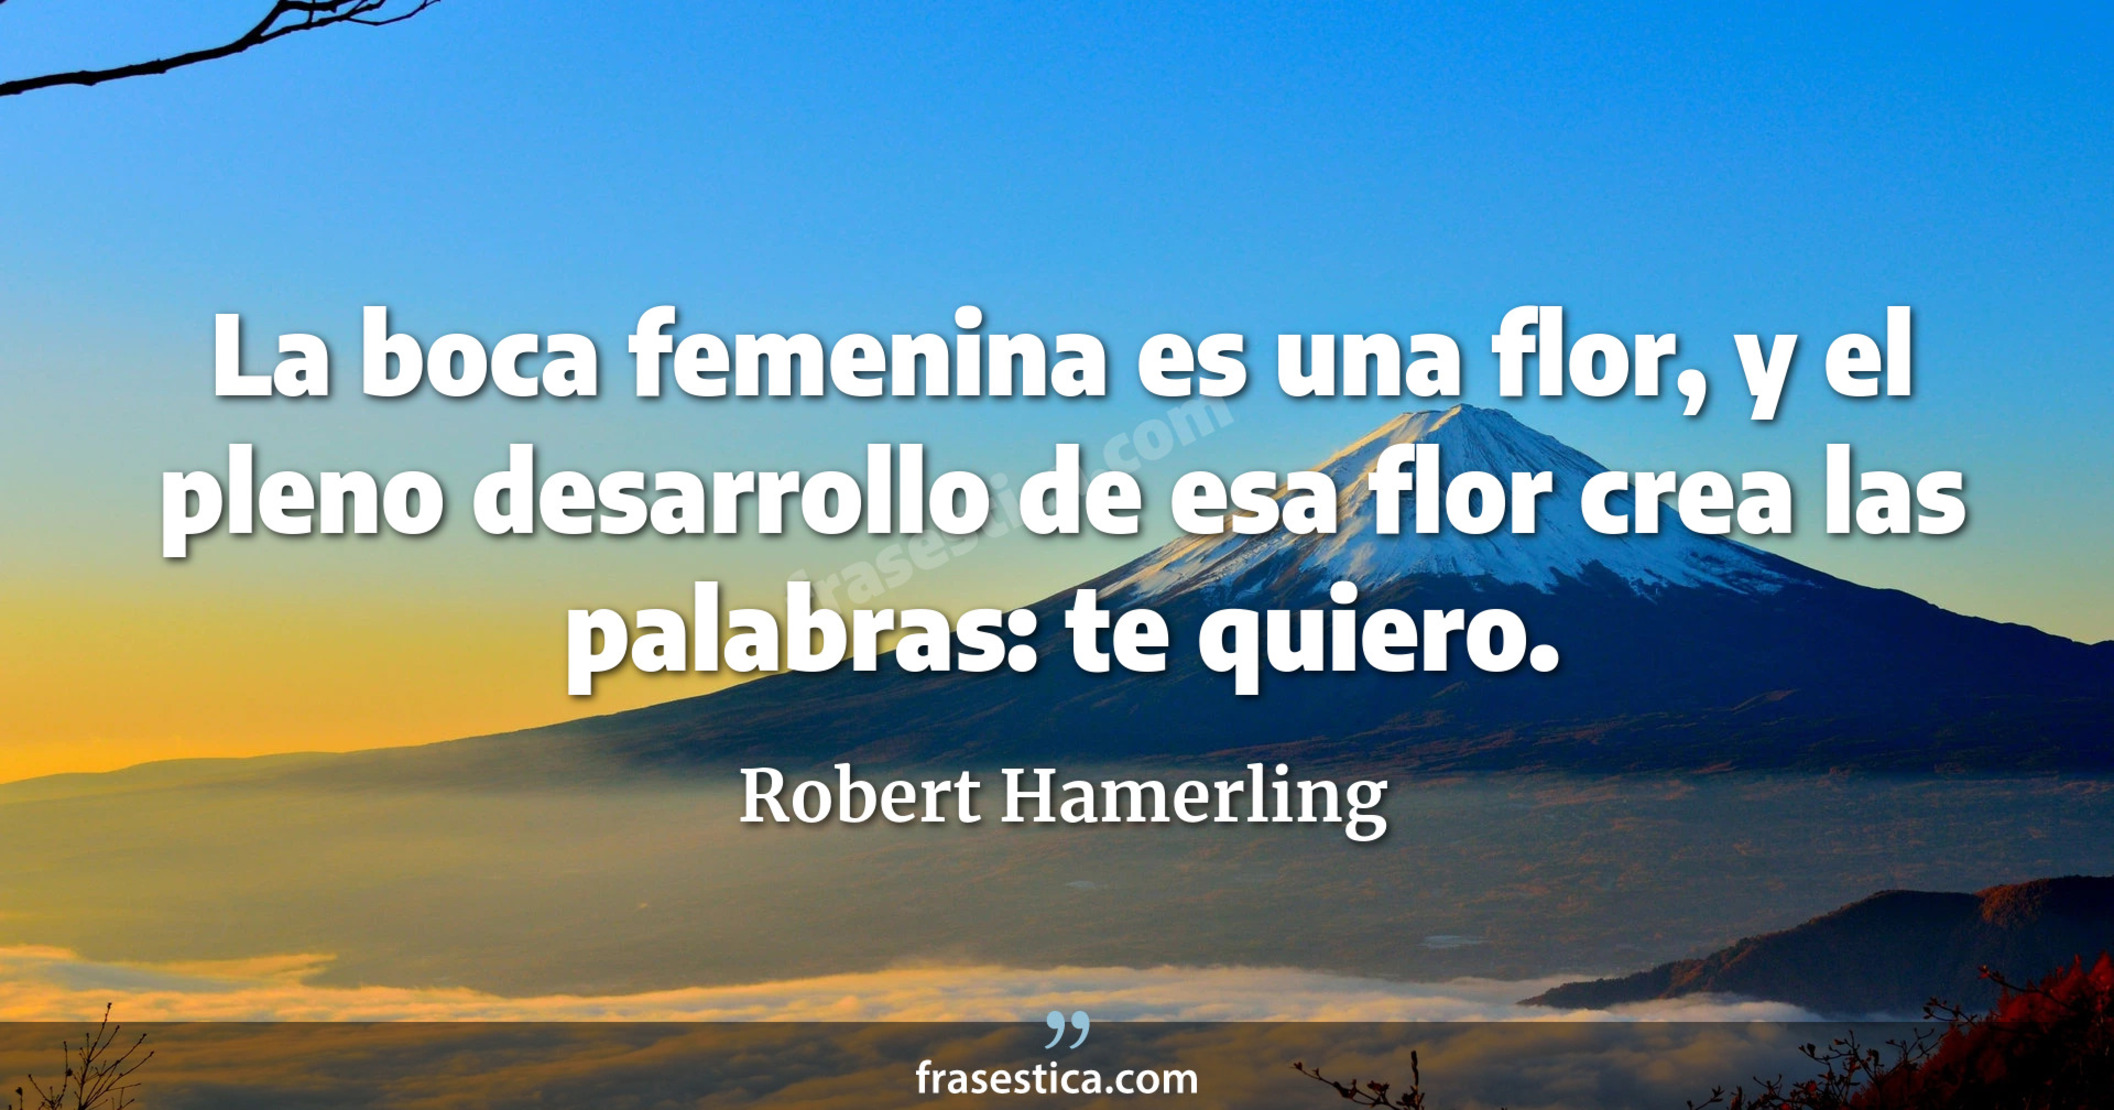 La boca femenina es una flor, y el pleno desarrollo de esa flor crea las palabras: te quiero. - Robert Hamerling